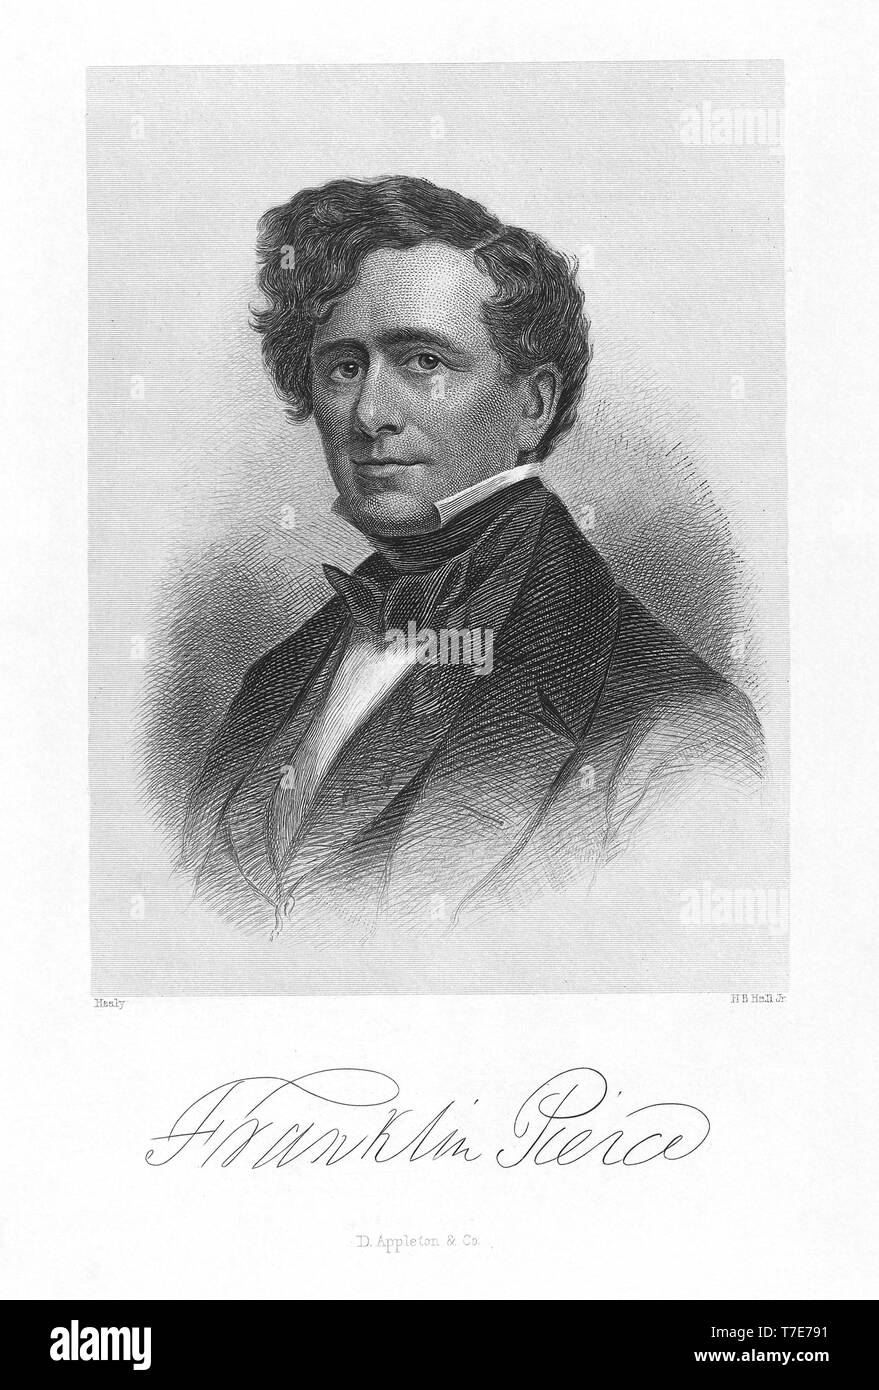 Franklin Pierce (1804-1869), 14. Präsident der Vereinigten Staaten, halber Länge Porträt, Kupferstich von H.B. Hall, von D. Appleton & Co., 1853 veröffentlicht. Stockfoto